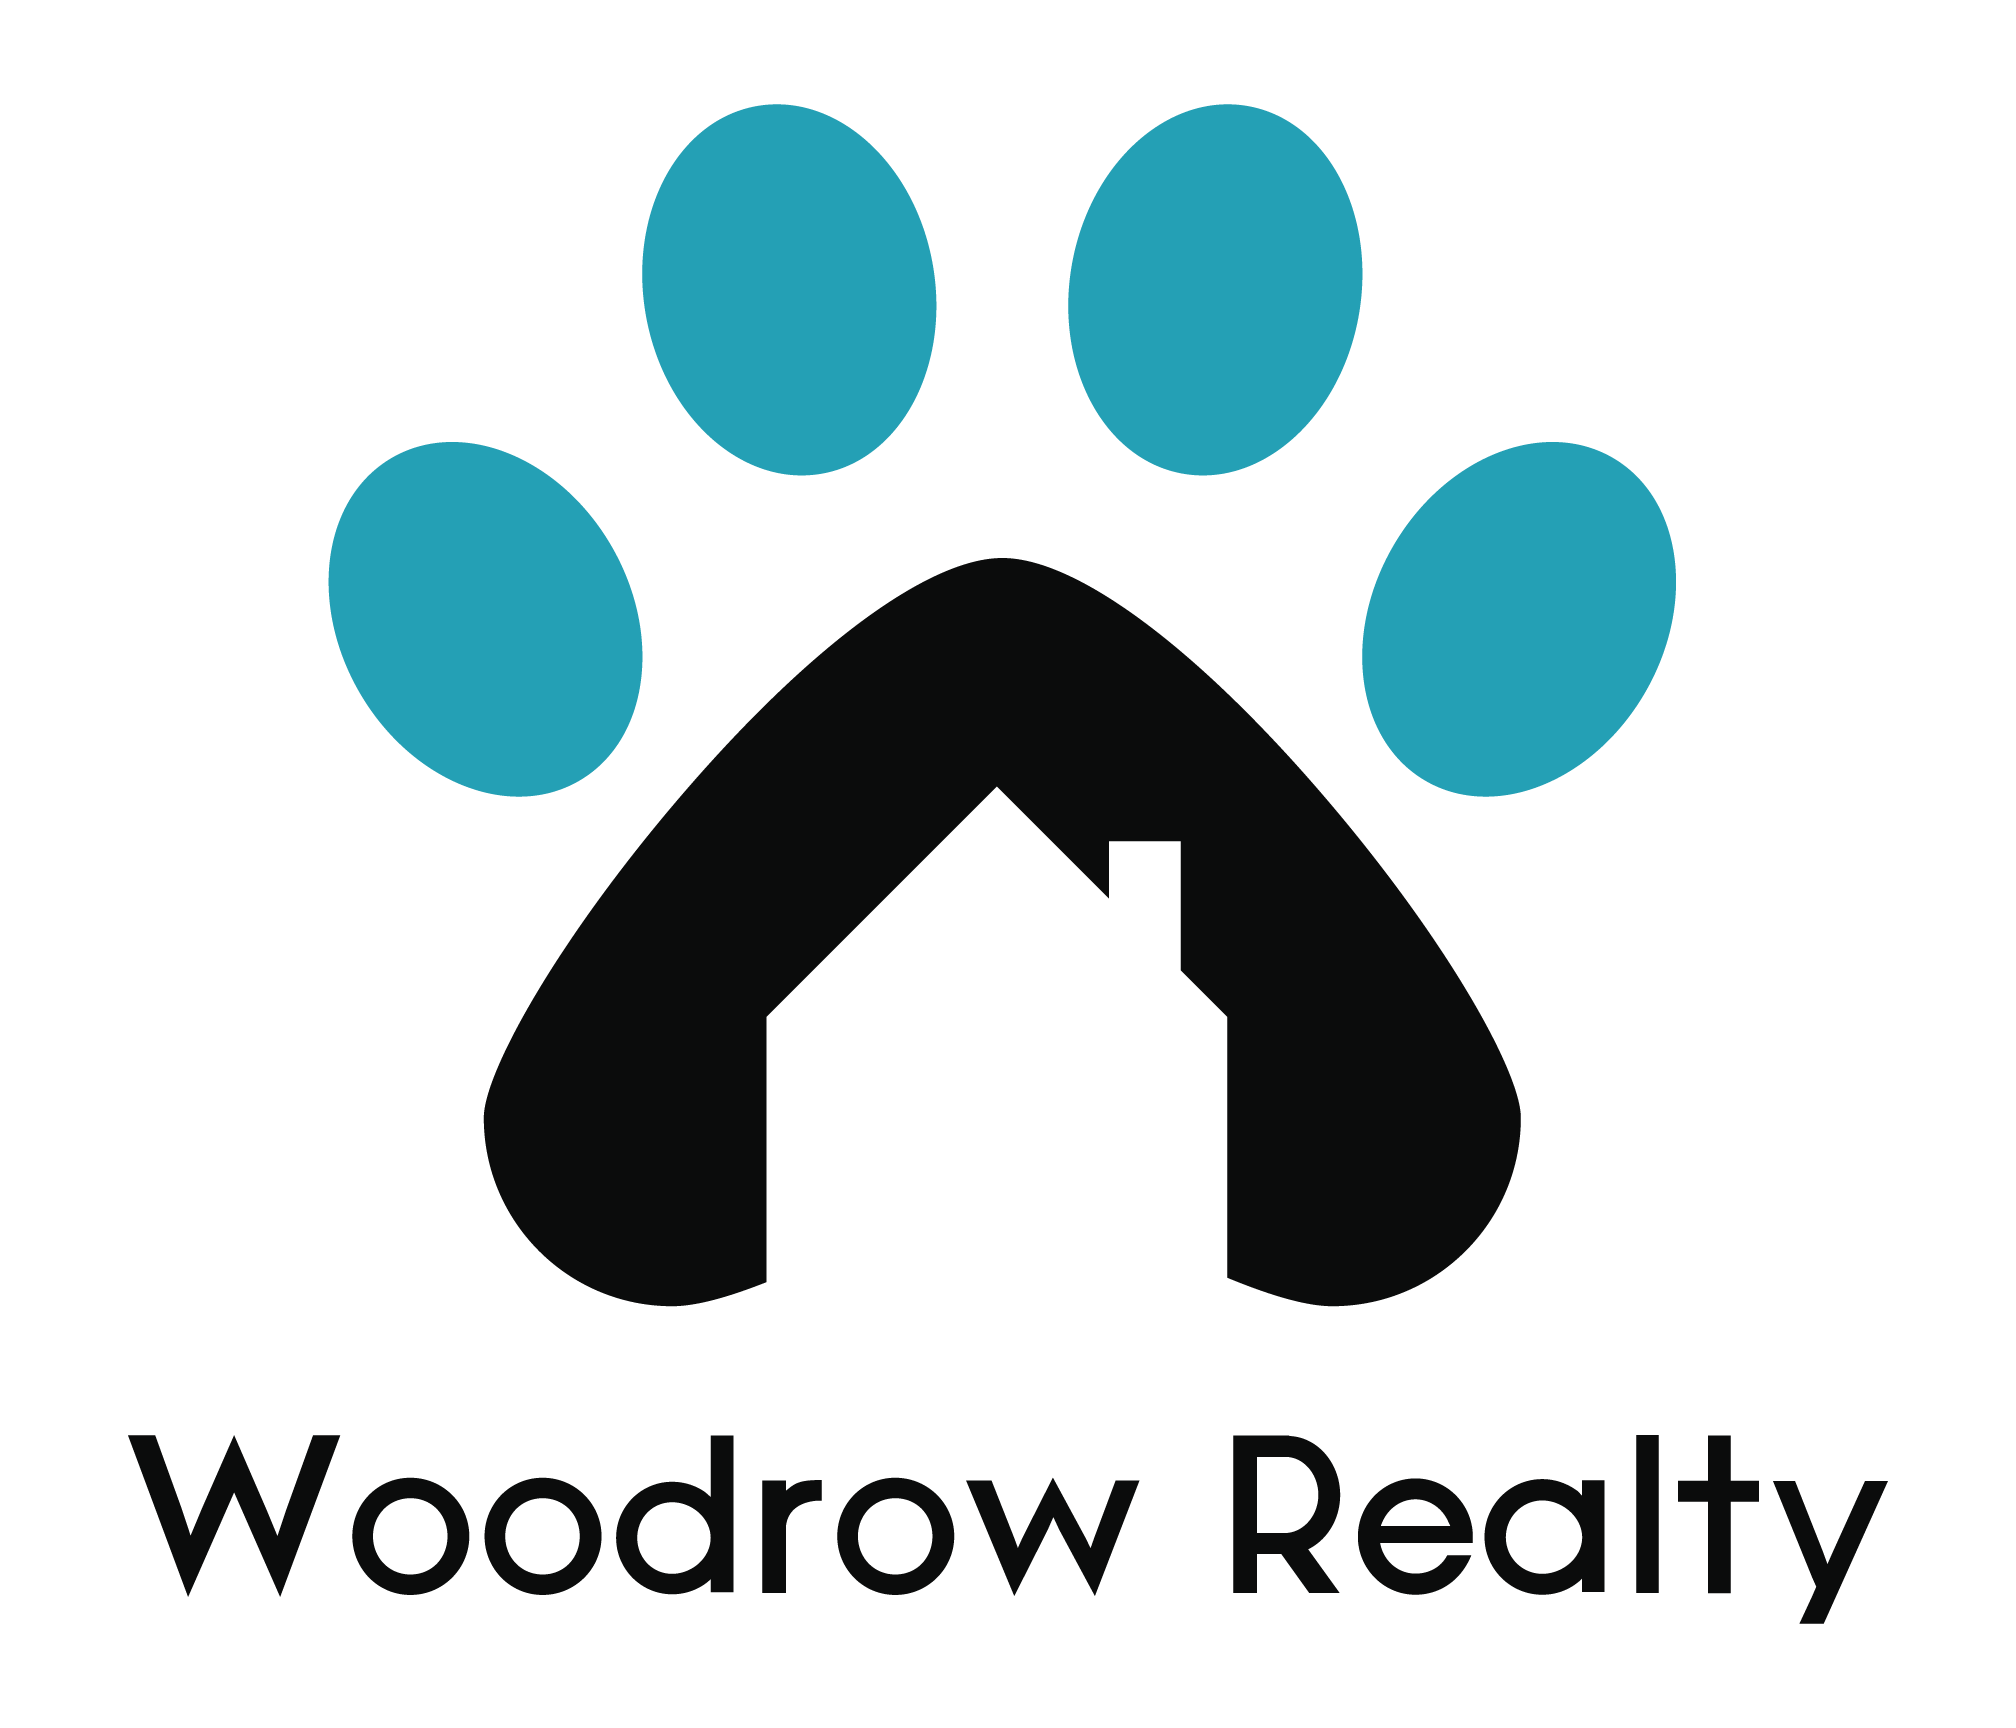 Woodrow Realty logo